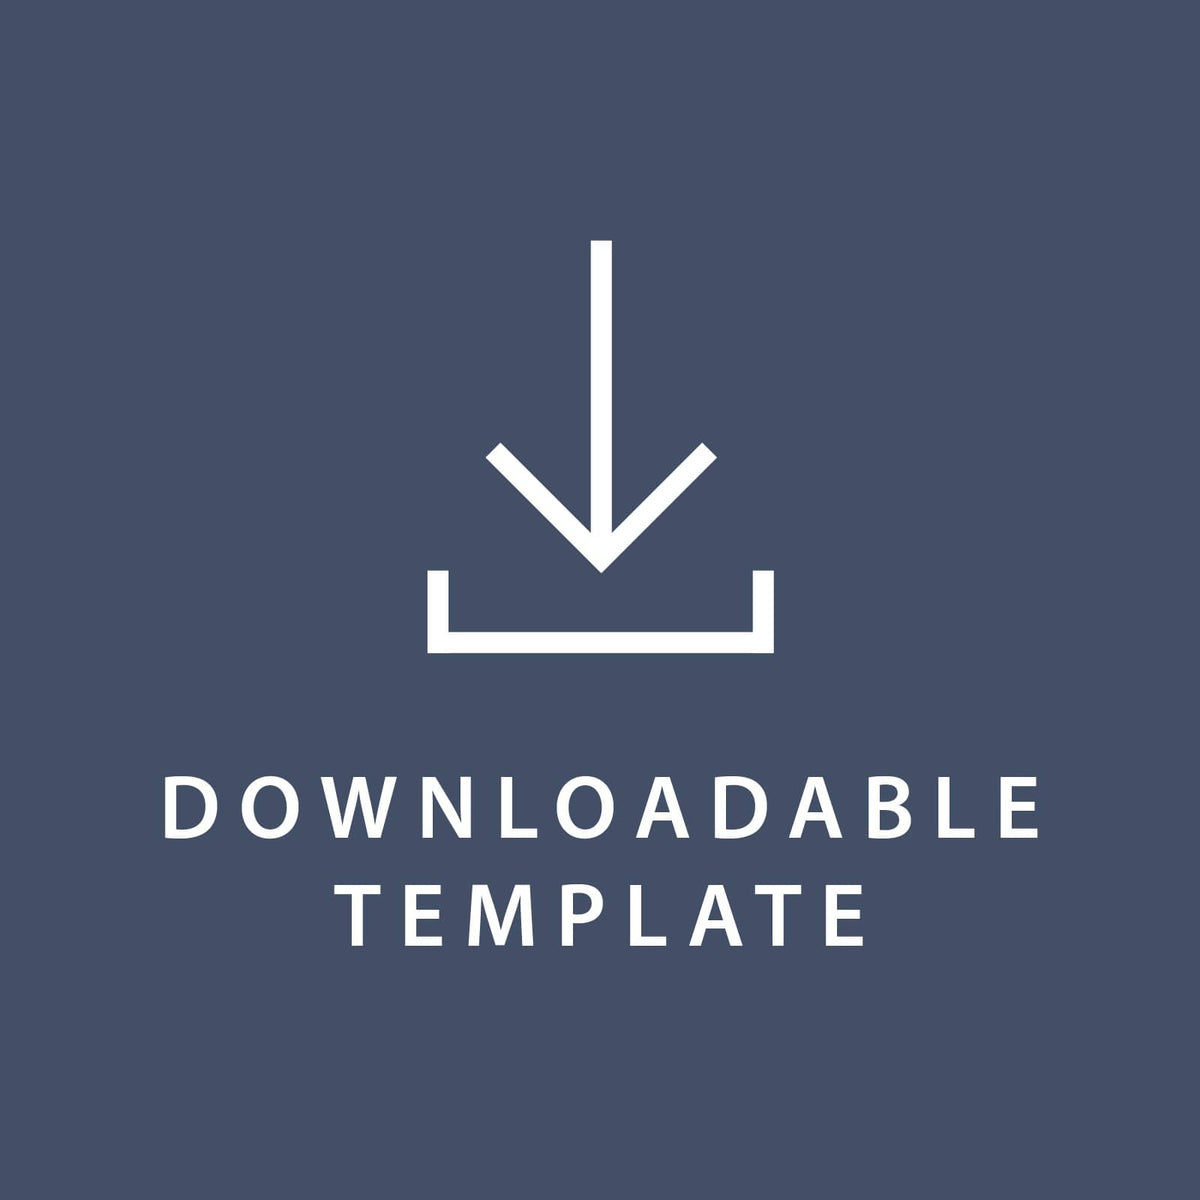 Template for 5.5 x 8.5 Response Cards Gartner Studios Template tmplt0425